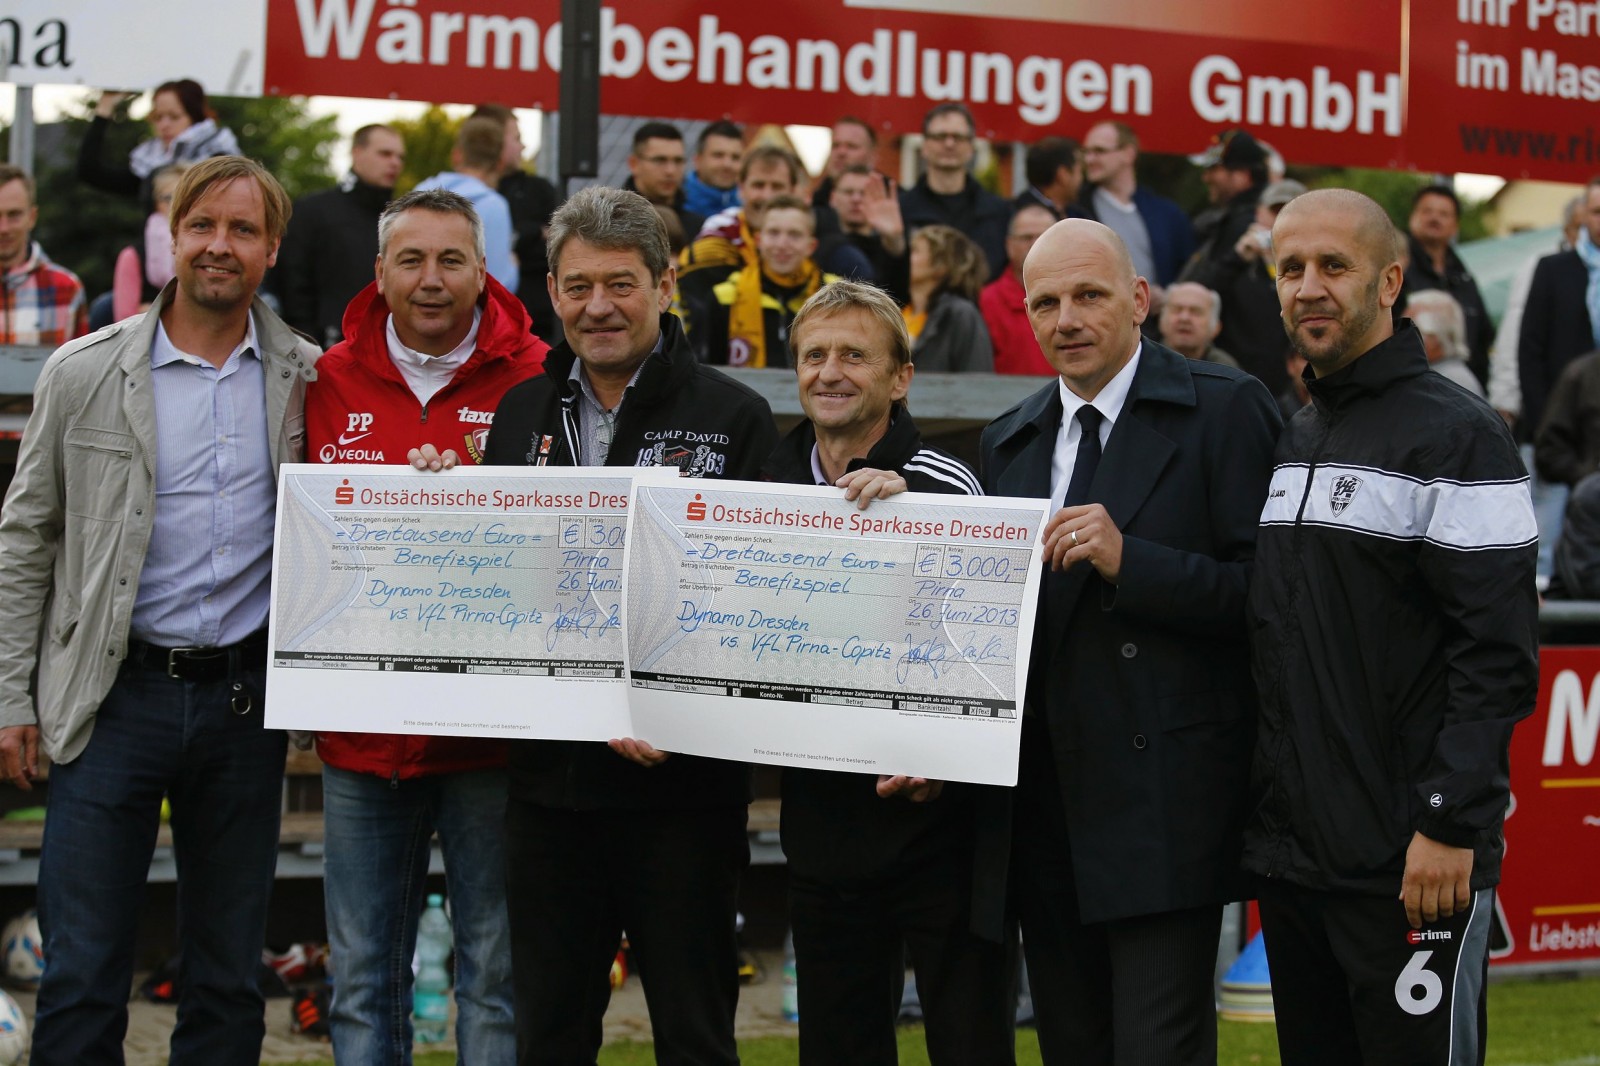 Ostsächsische Sparkasse Dresden, SG Dynamo Dresden und VfL Pirna-Copitz spenden gemeinsam 6.000 Euro an die Flutopfer. Foto: Marko Förster